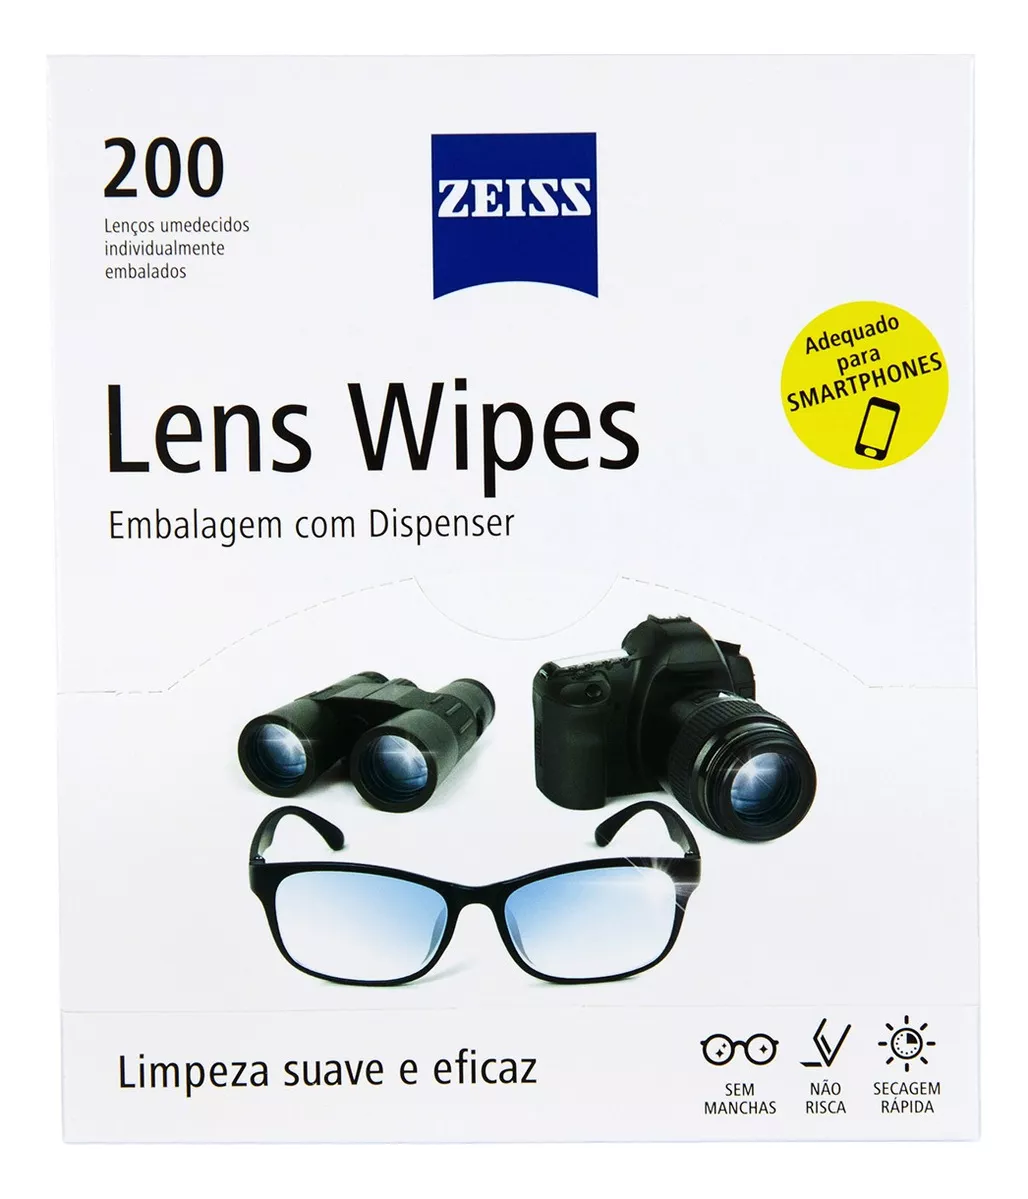 Primeira imagem para pesquisa de lens wipes